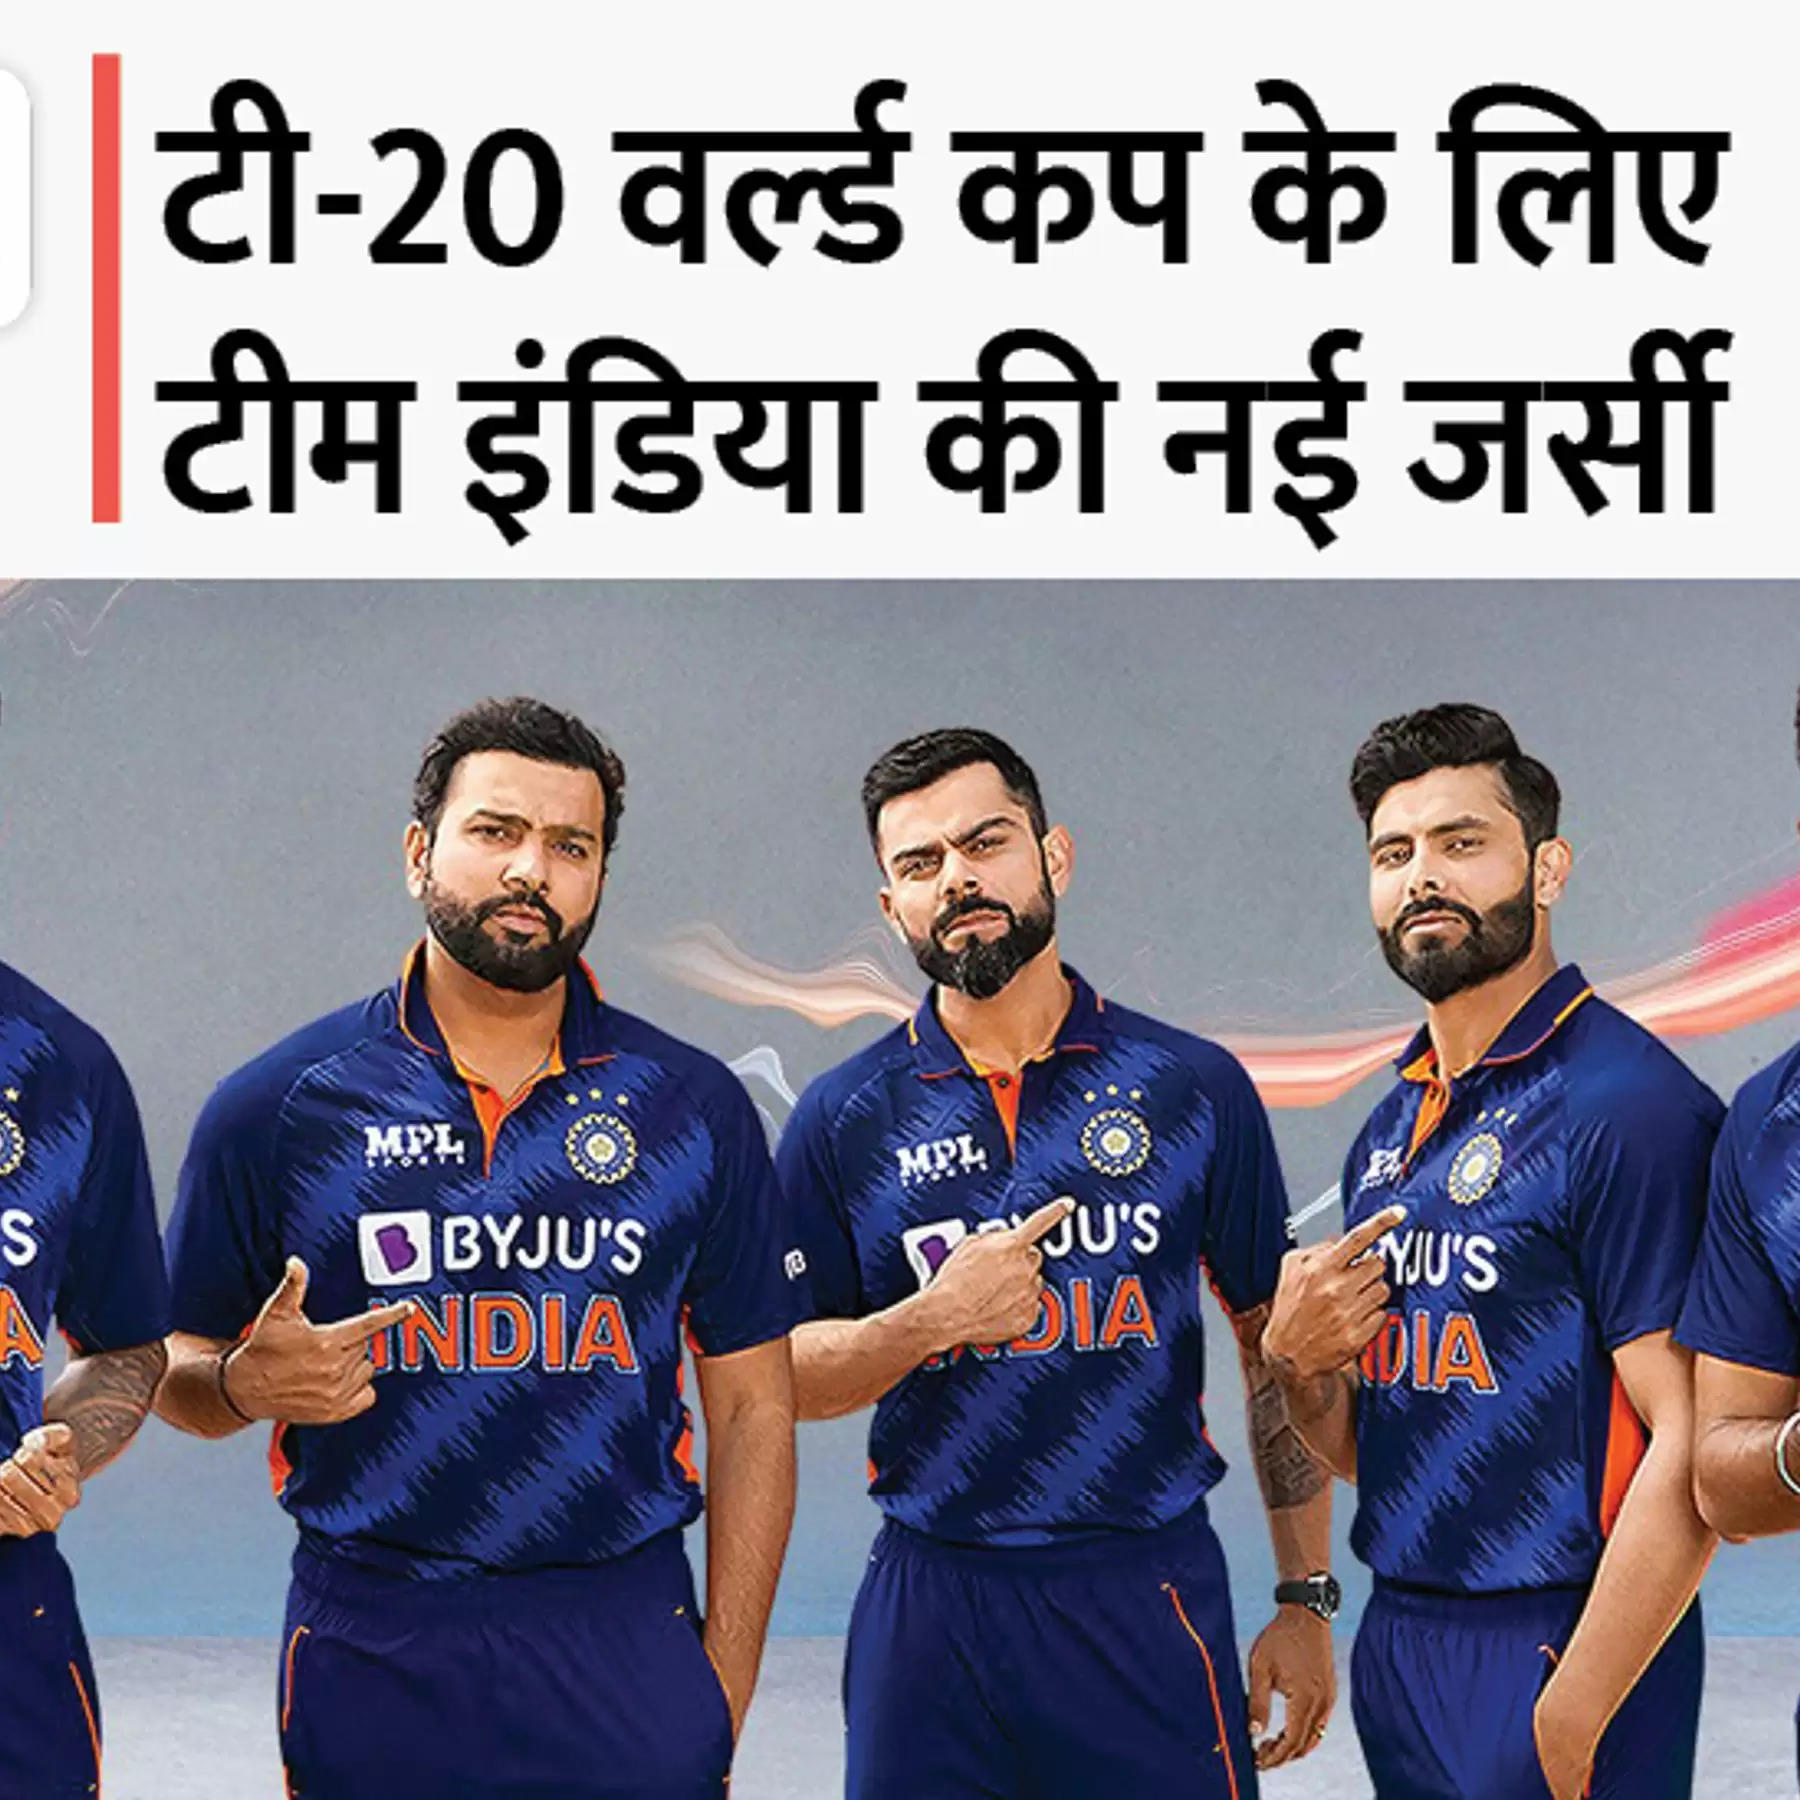 T20 World Cup में तिरंगा लहराने को भारतीय खिलाड़ियों ने बदला लुक, नई जर्सी के साथ लौटा 2007 की जीत वाला रंग, देखें वीडियो